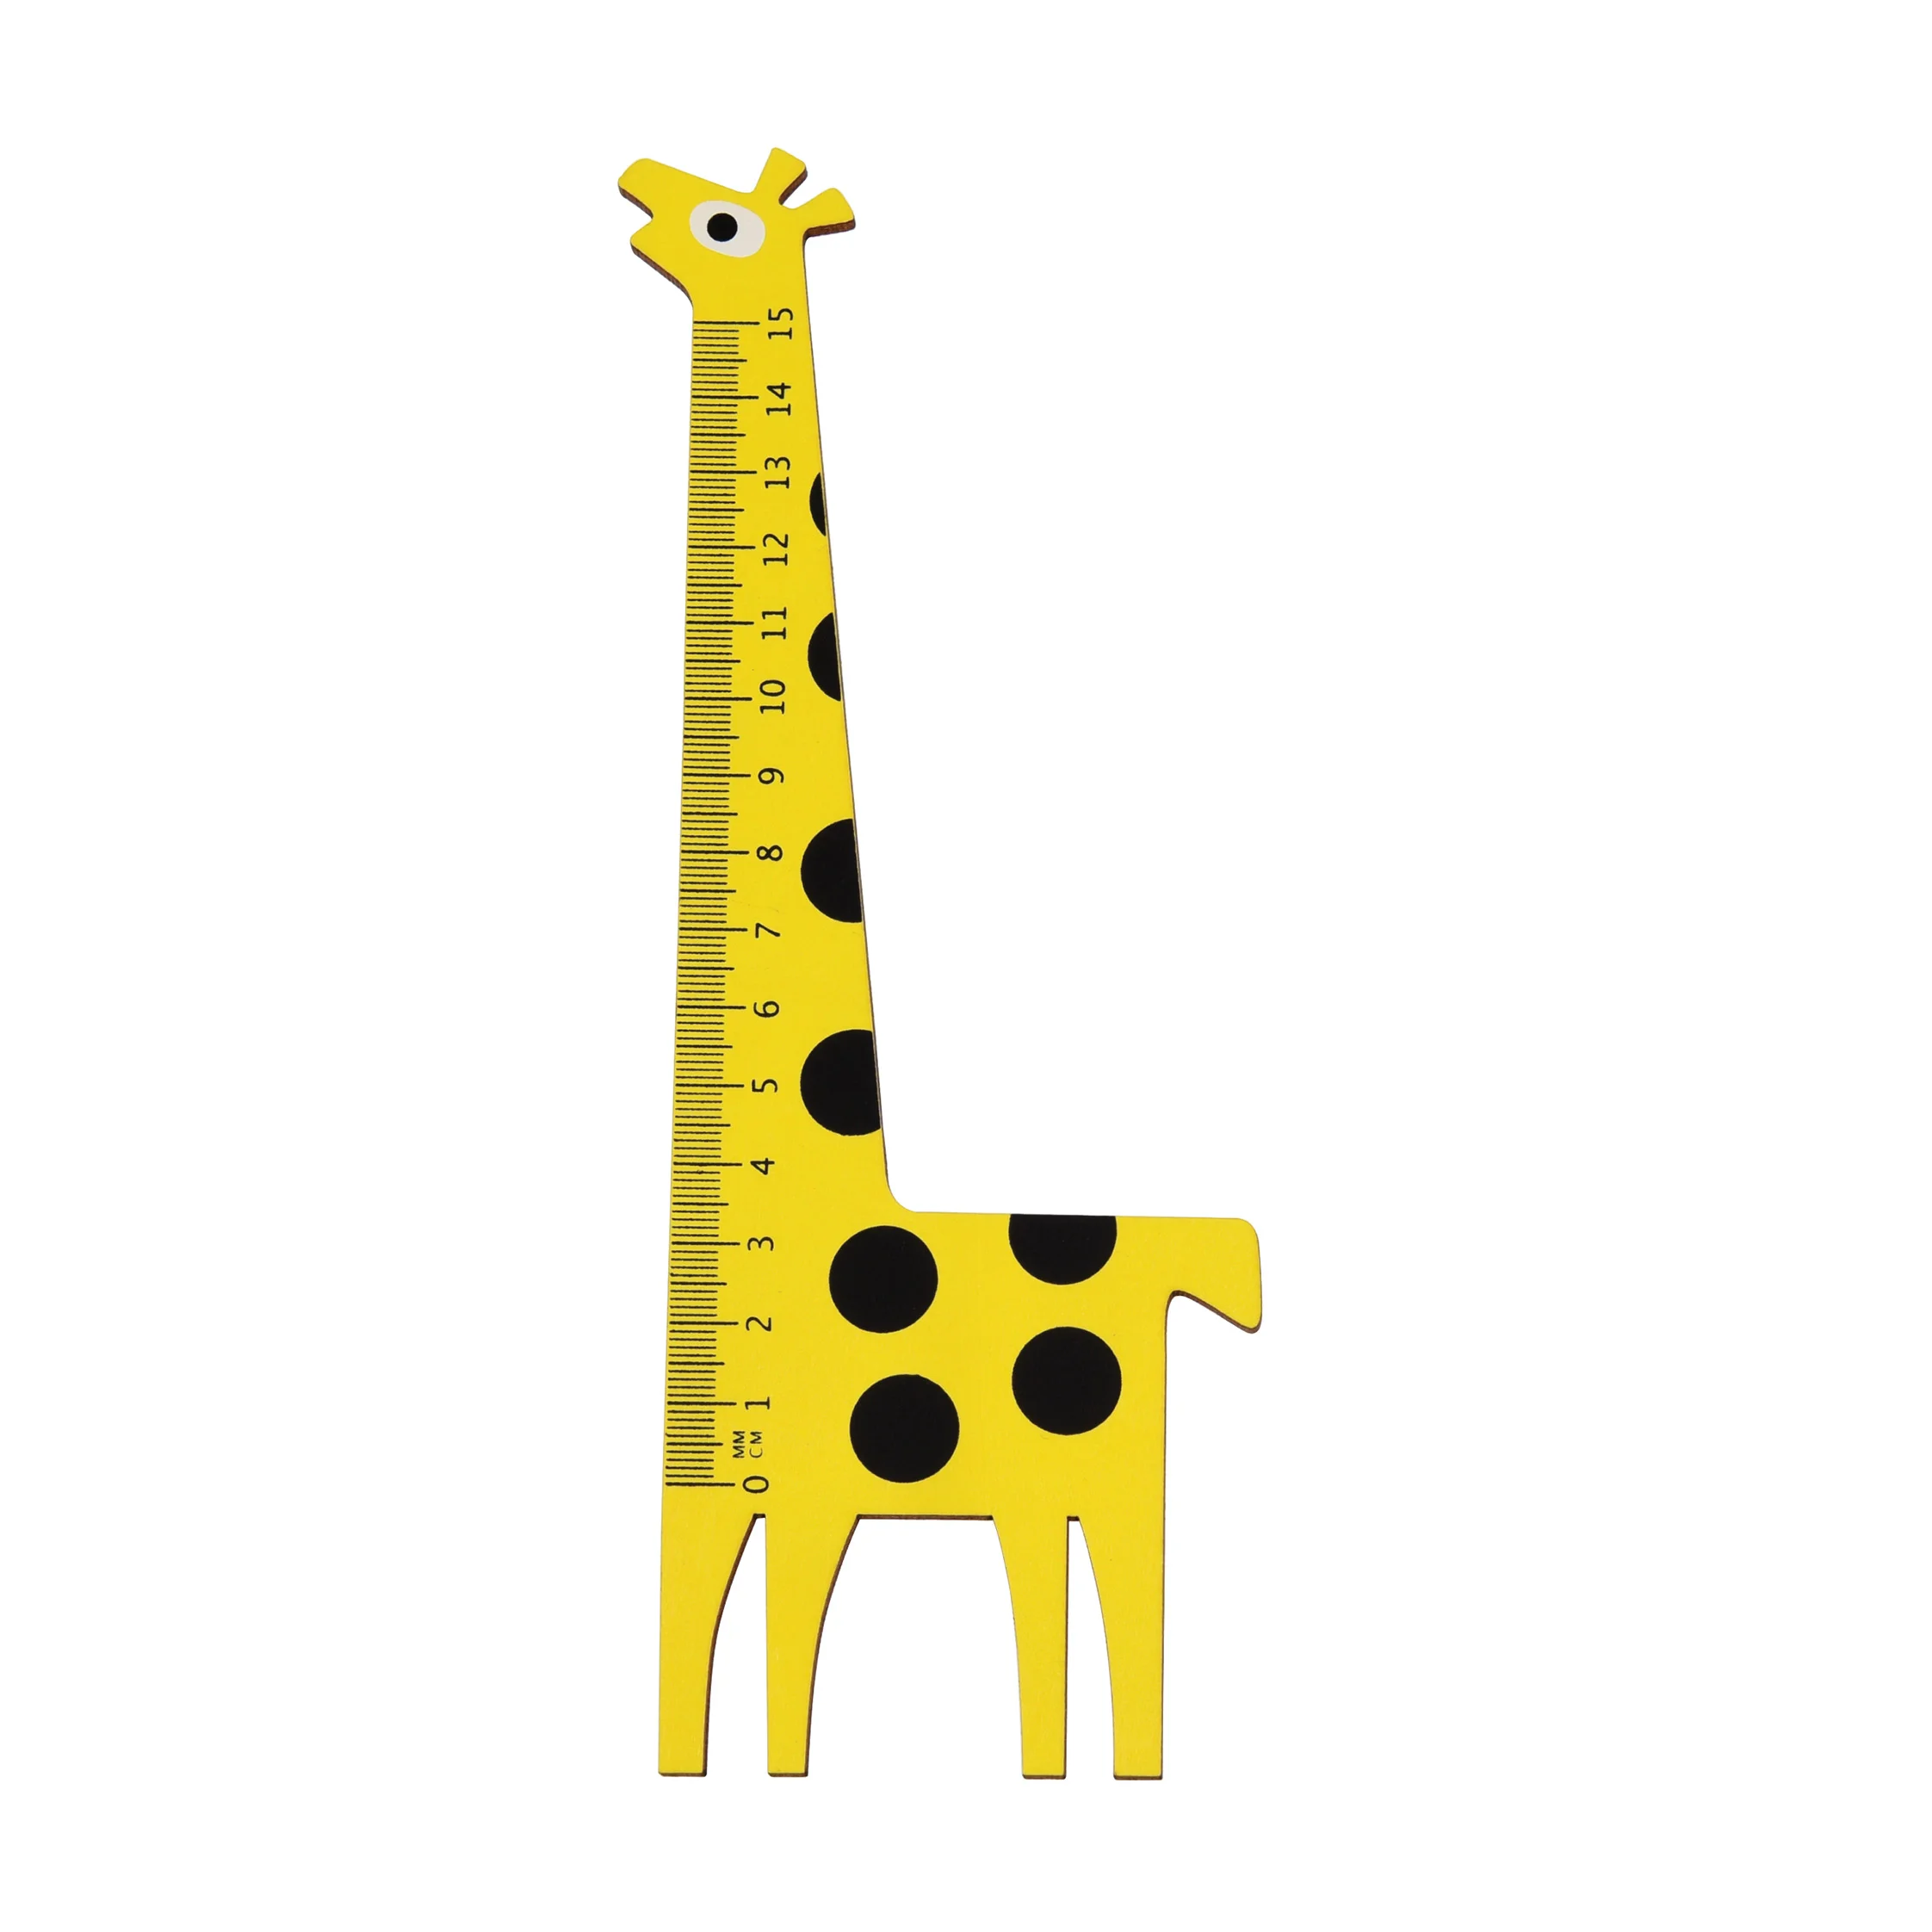 holzlineal giraffe